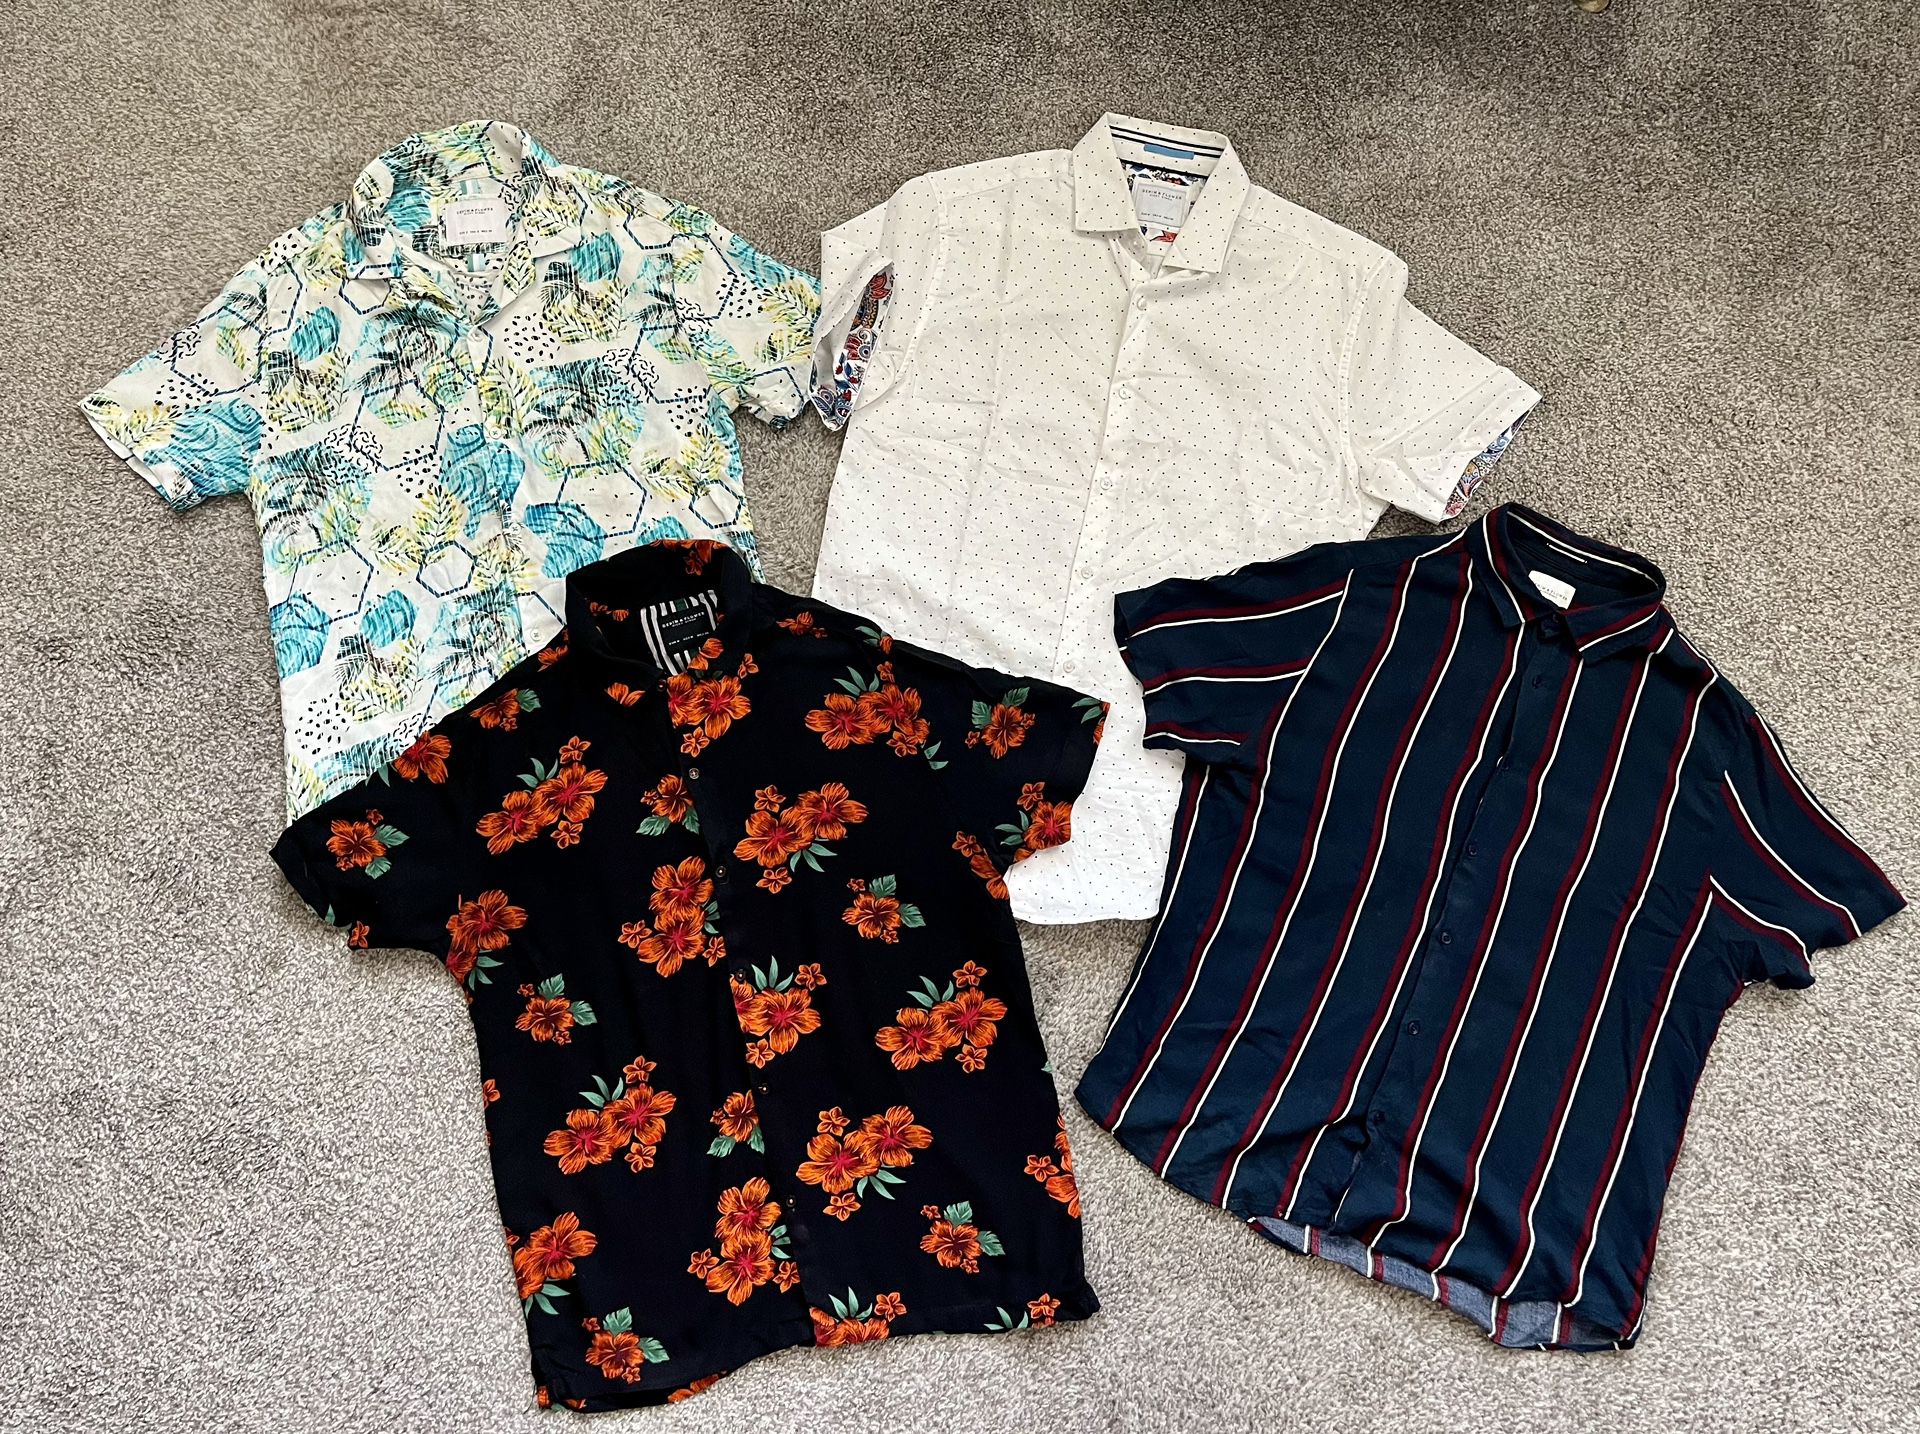 4) Denim & Flowers Short Sleeve Button-Up Shirts